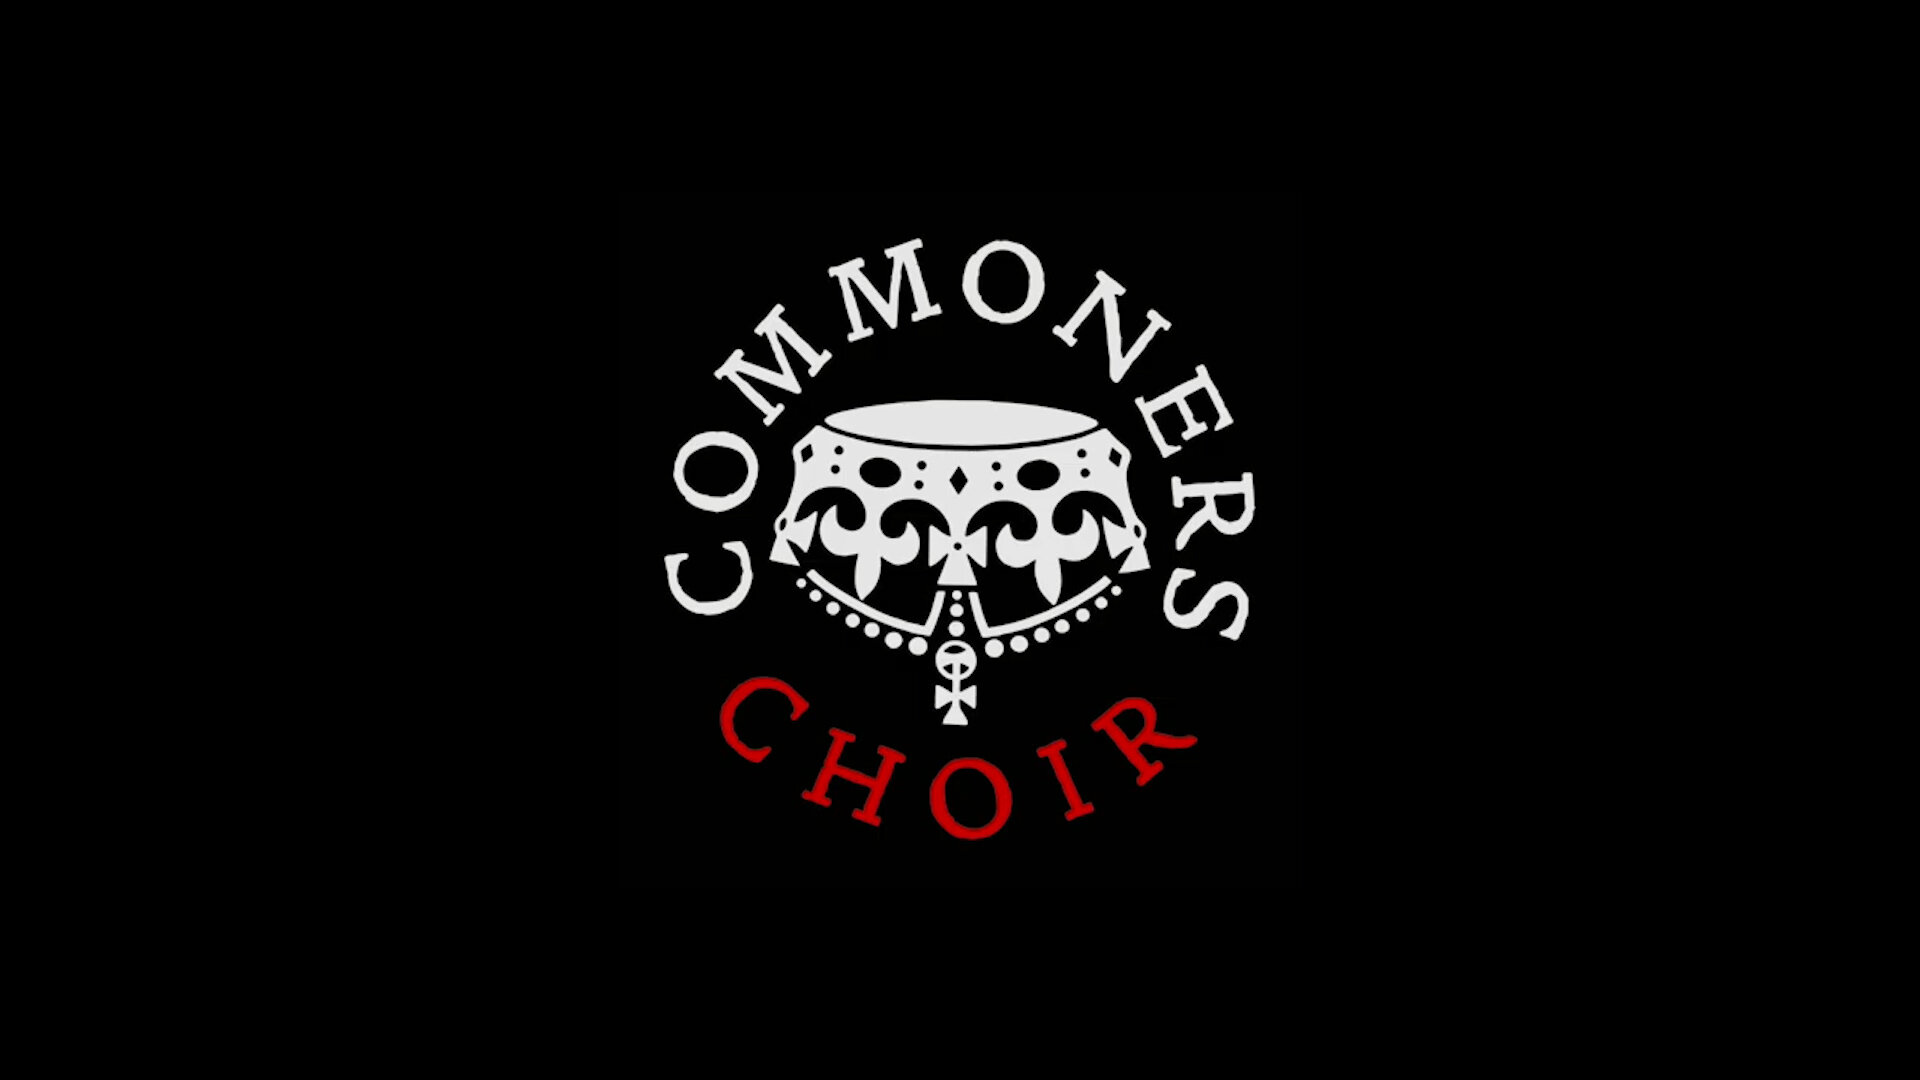 Commoners Choir 16x9 4.jpg